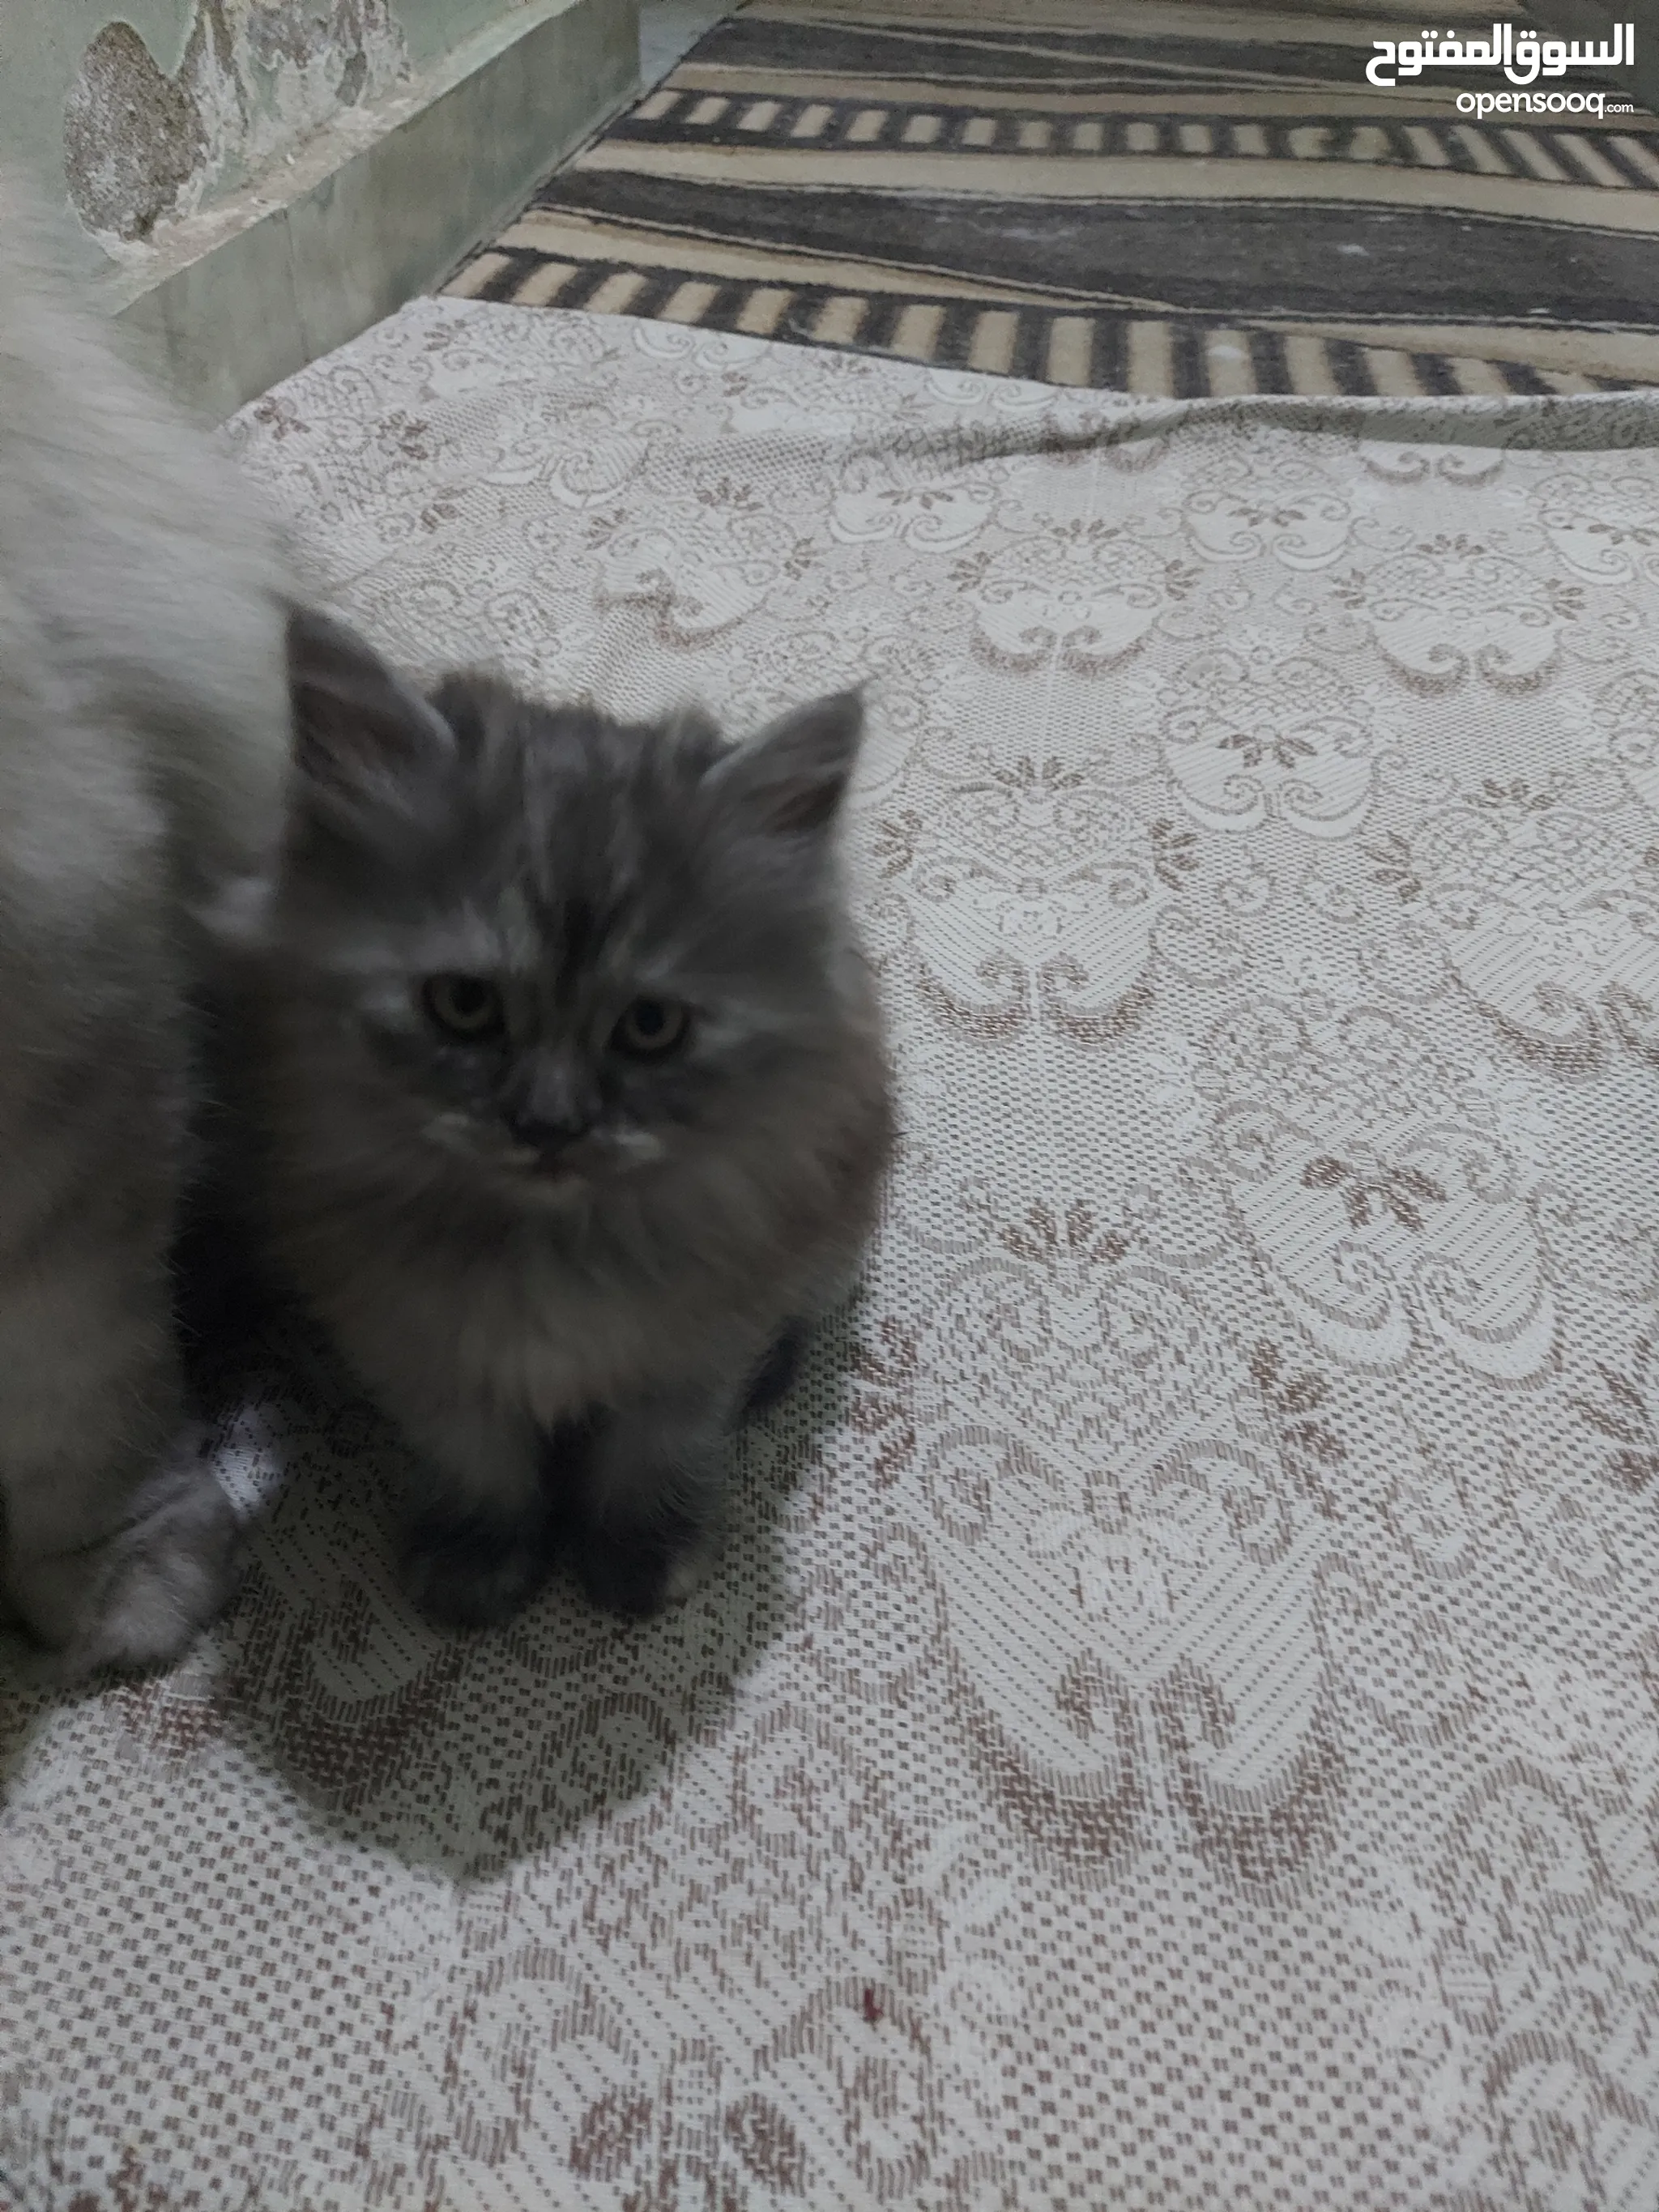 قطط للبيع في مصر : قطط صغيرة : قطط شيرازي : فرعوني : مع صور